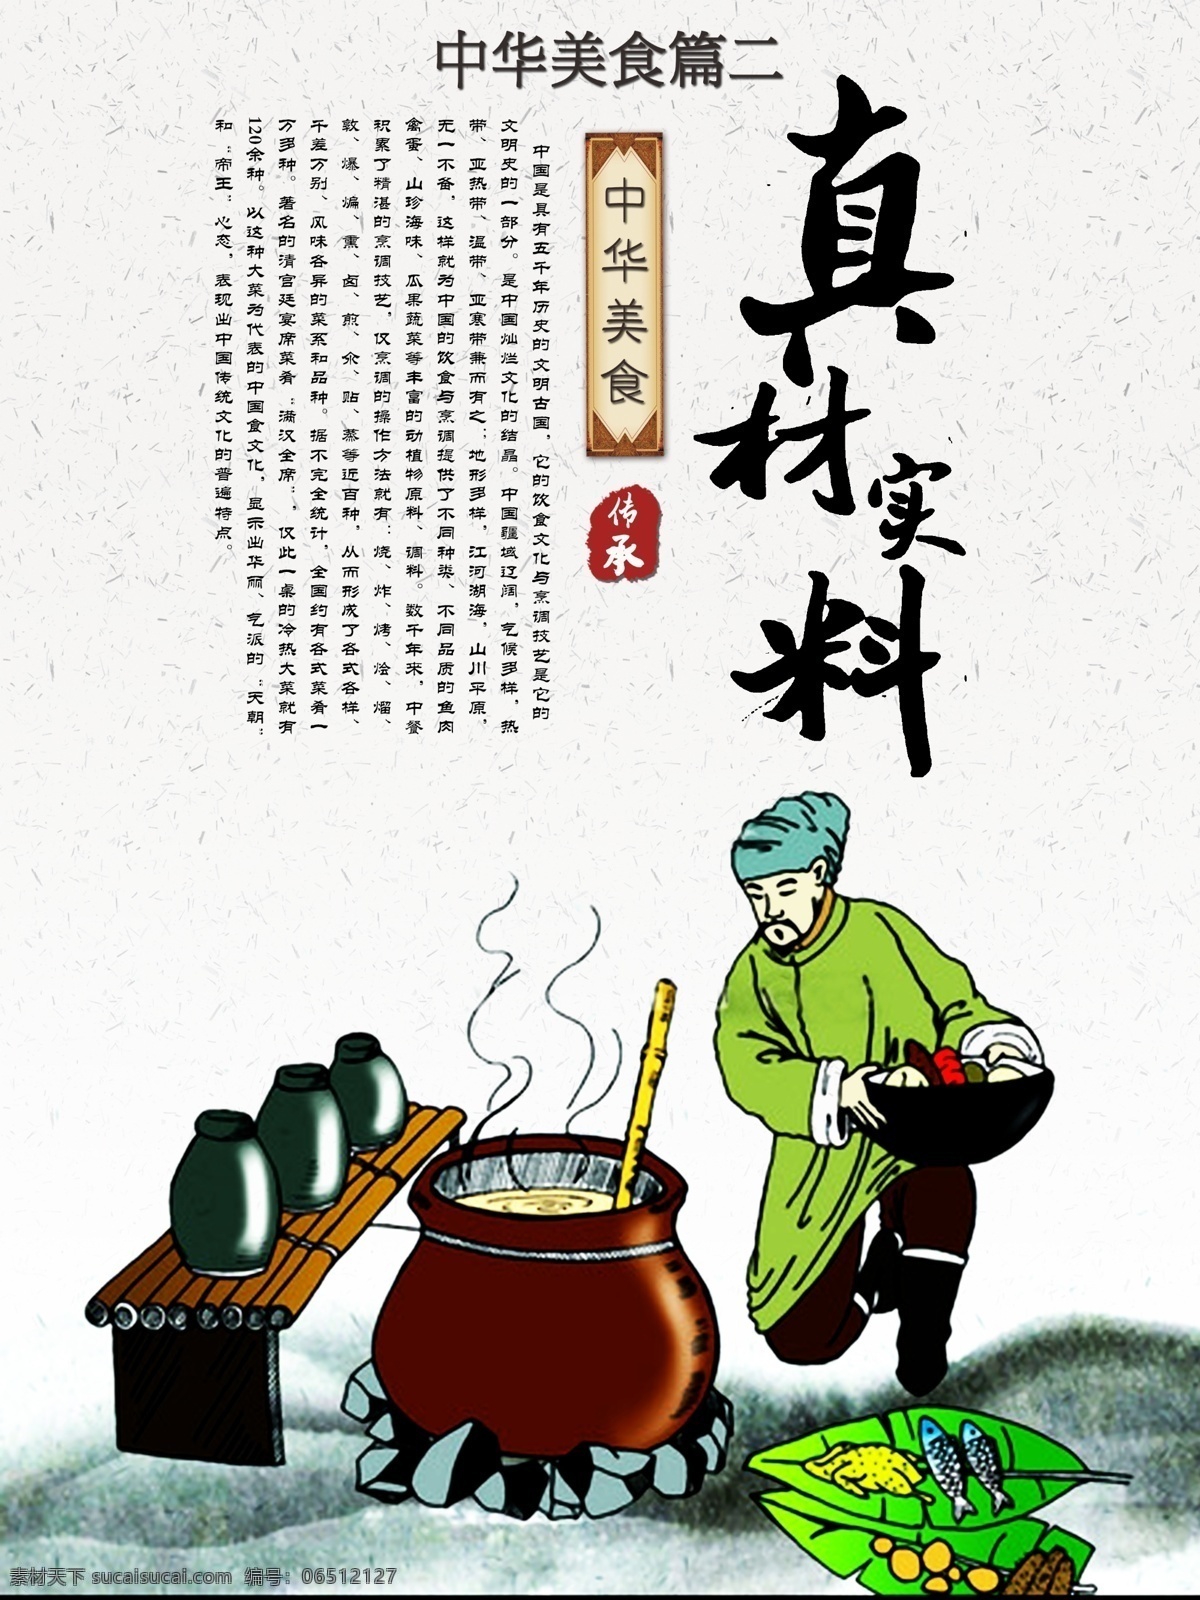 中华美食展板 中华美食 美食展板 毛笔字 展板设计 手绘 插画 饮食文化 文化宣传 psd素材 水墨 中国风 白色